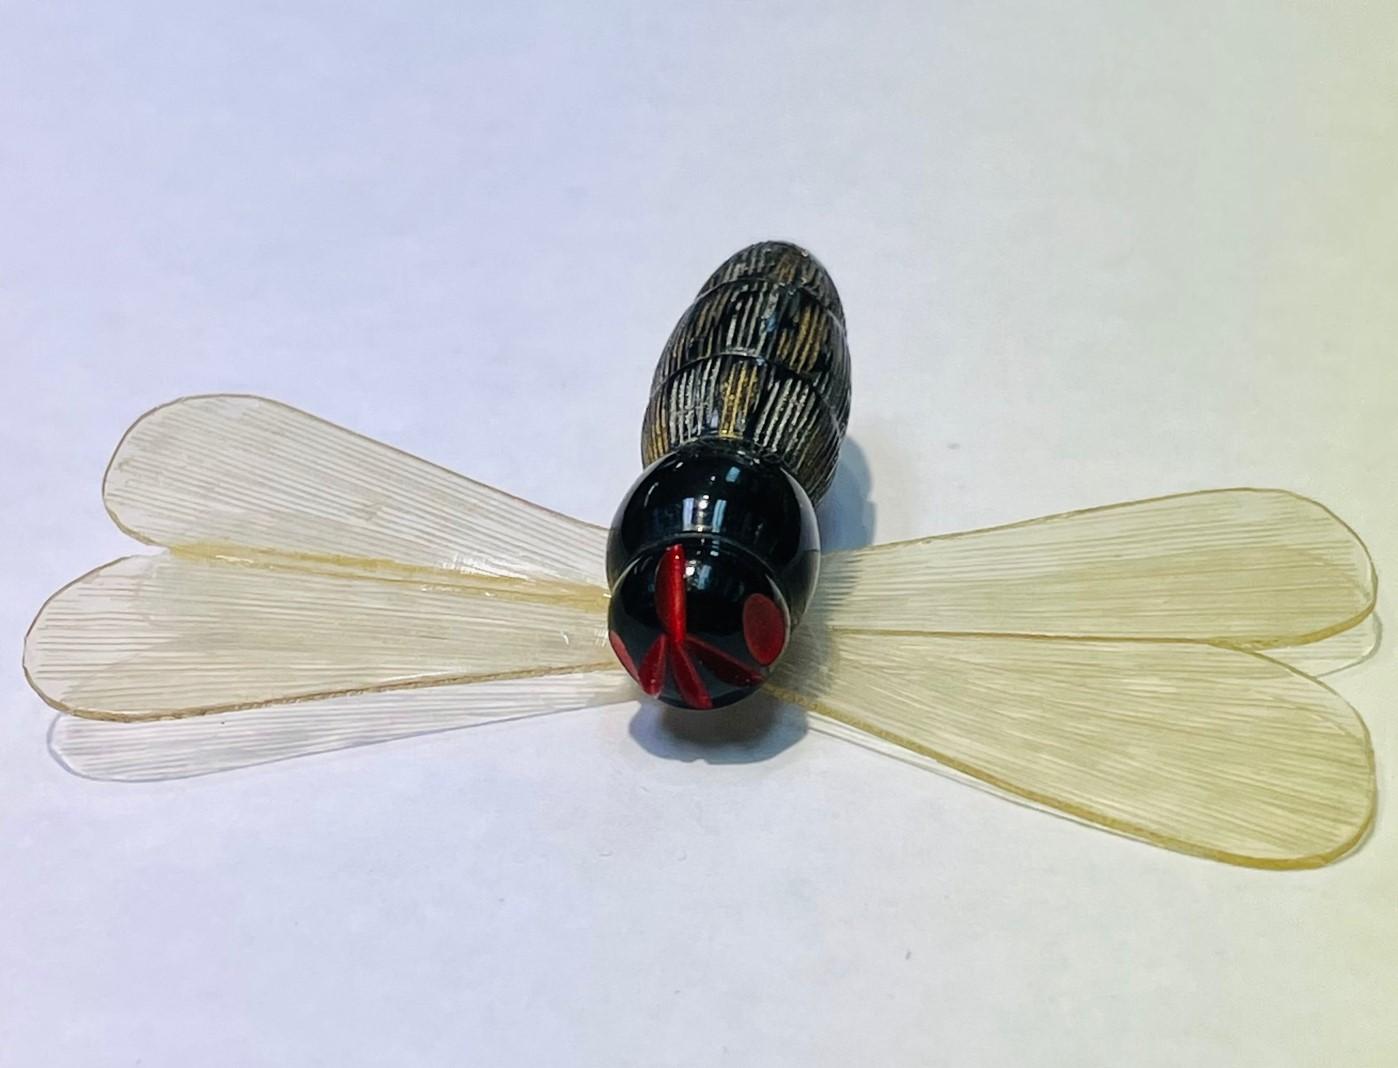 Fabuleuse broche libellule en celluloïd, légère comme une plume. Circa 1930s. Corps figuratif en celluloïd moulé à ailes transparentes avec système de fermeture à épingle et bouledogue. Mesure environ 3 